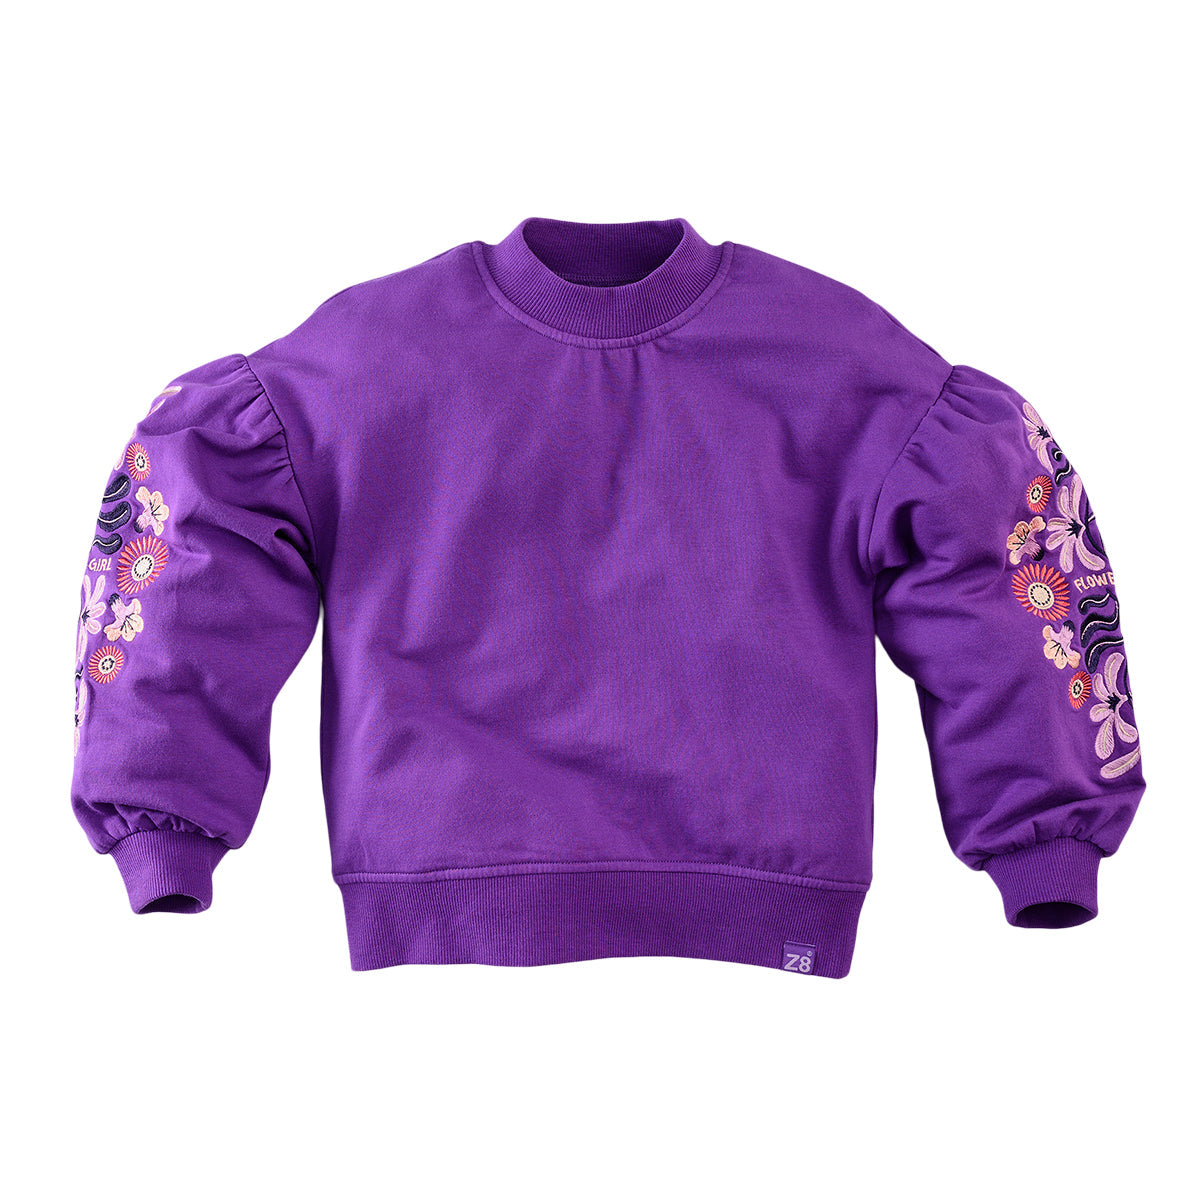 Meisjes Sweater Elvire van Z8 in de kleur Electric violet in maat 140-146.